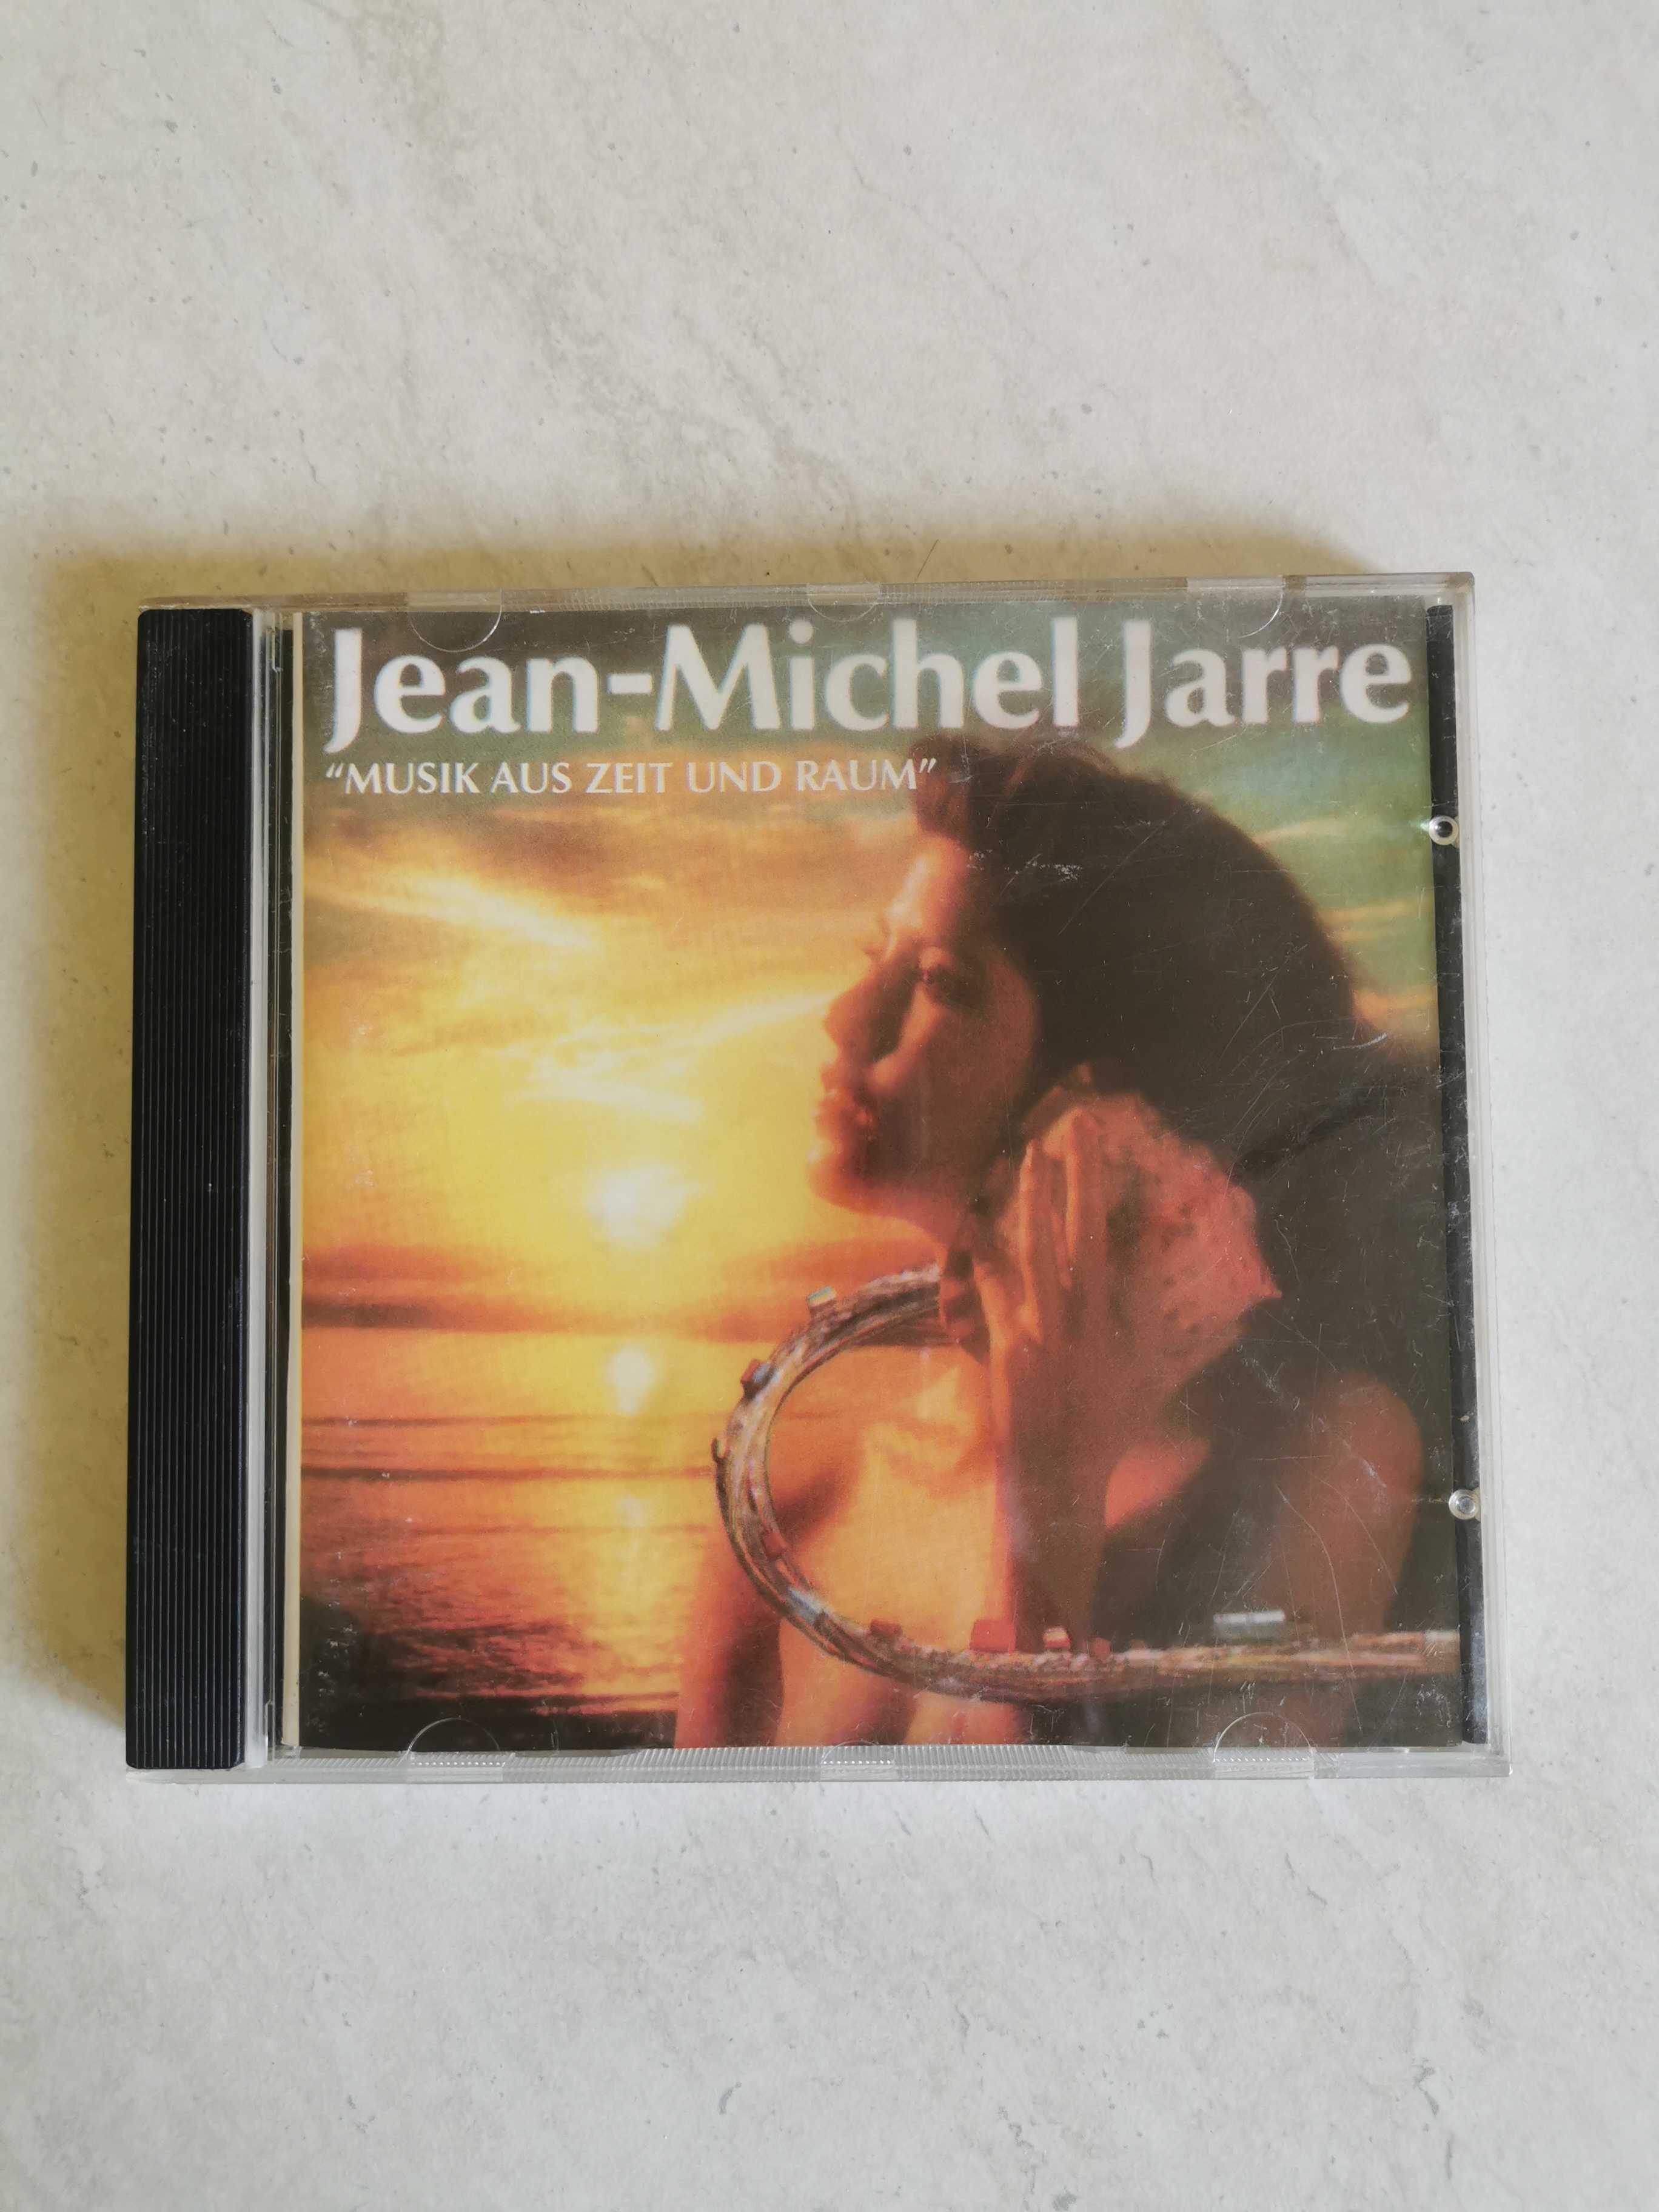 Jean Michel Jarre
Musik Aus Zeit Und Raum
cd